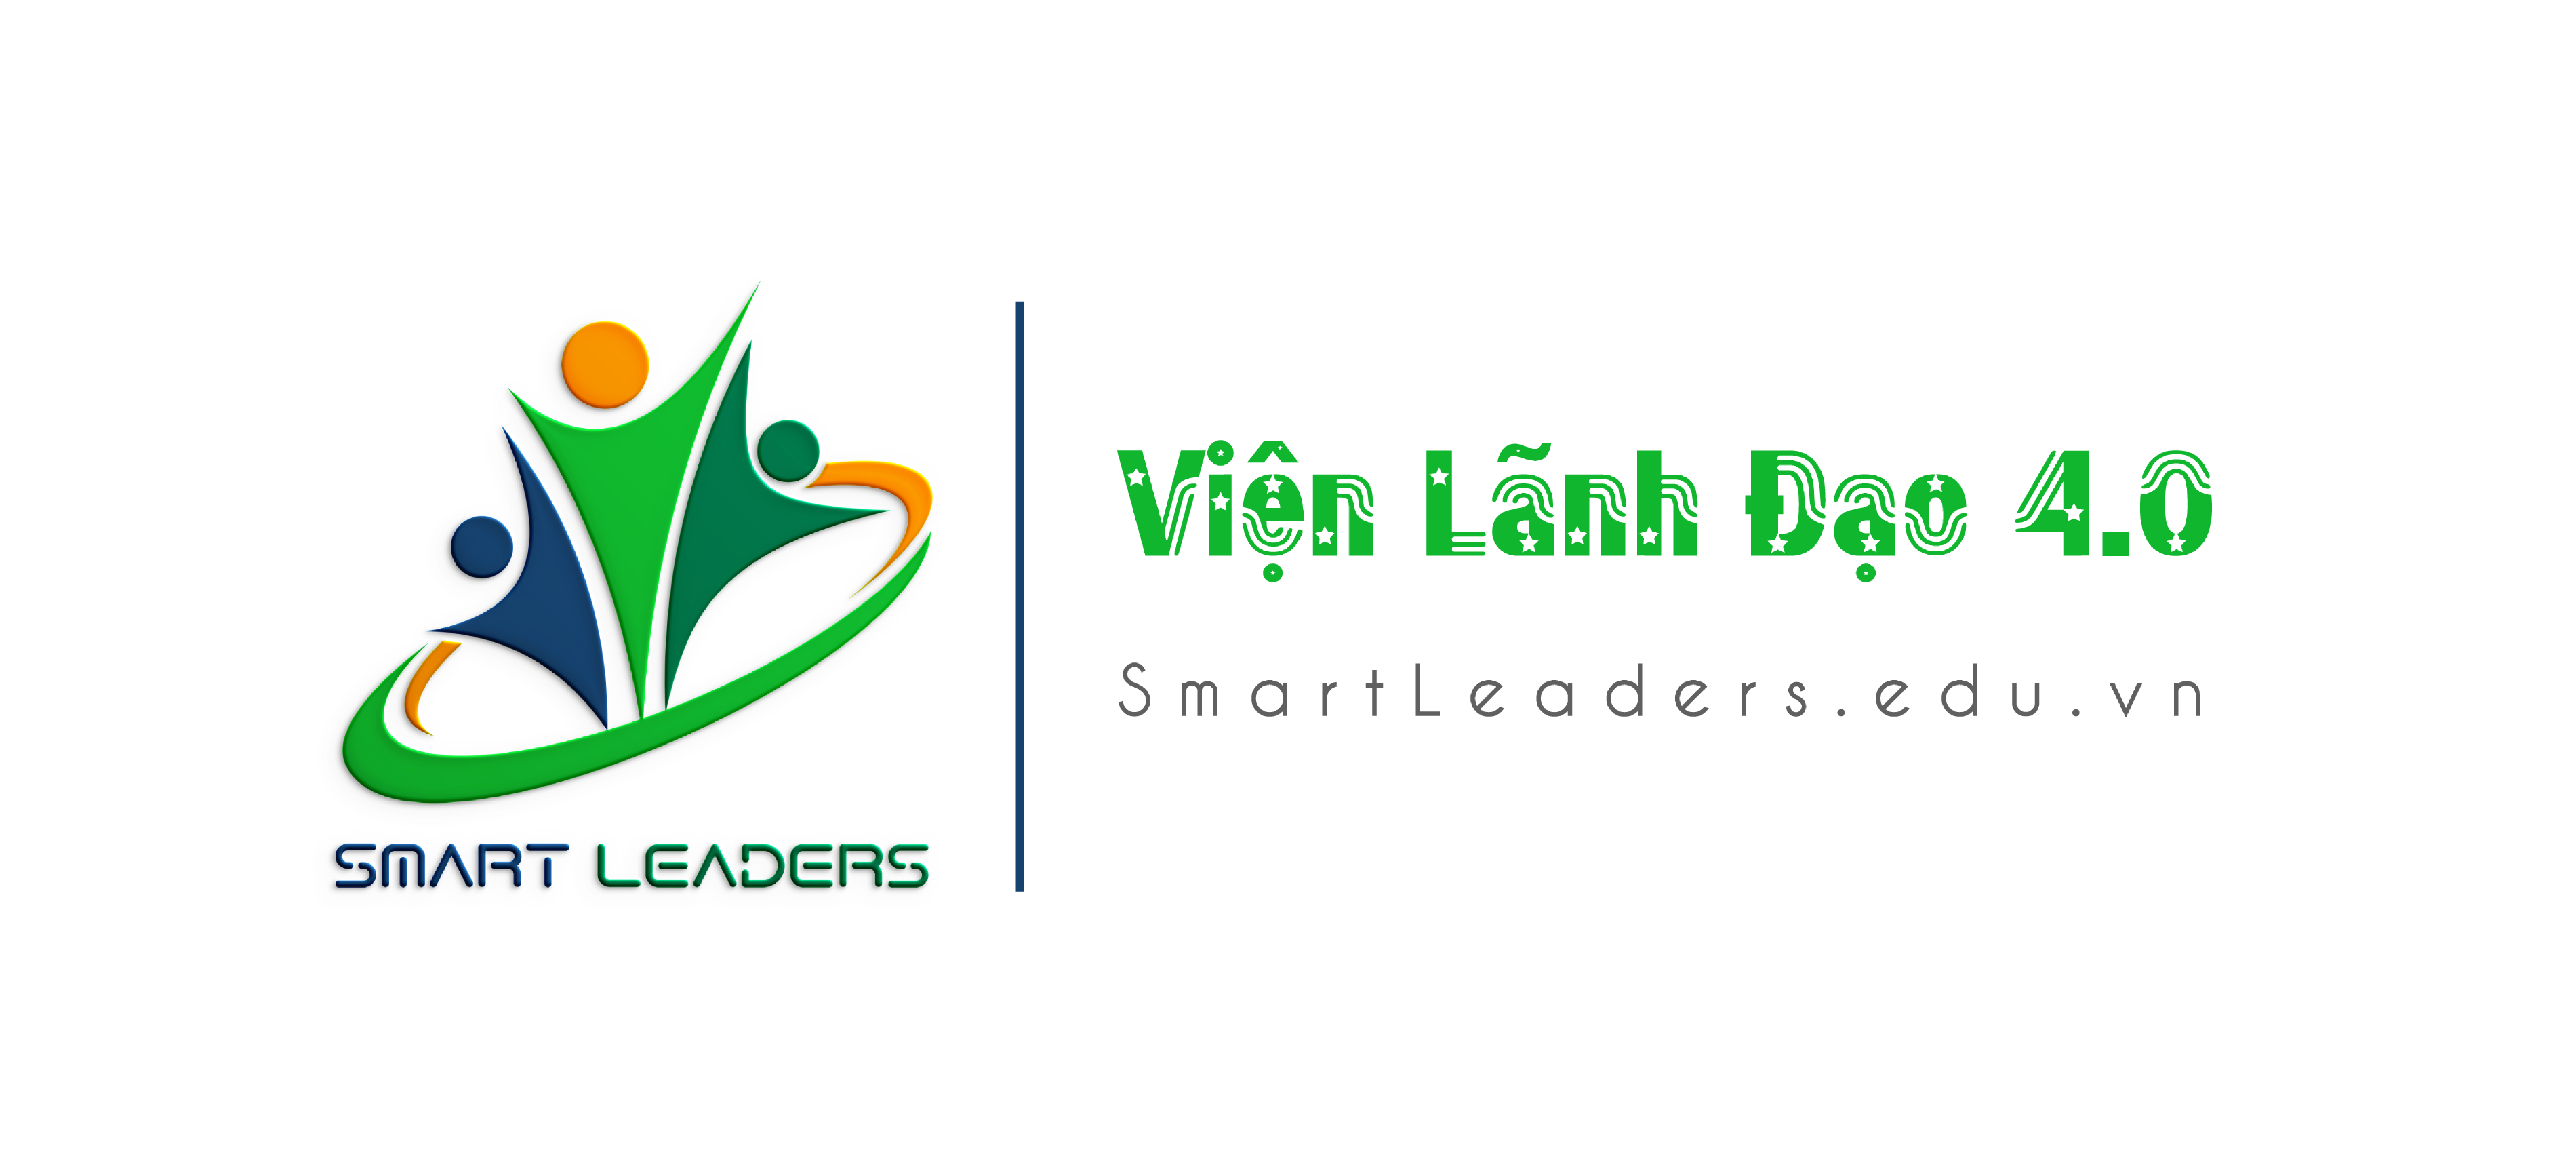 smartleaders.edu.vn